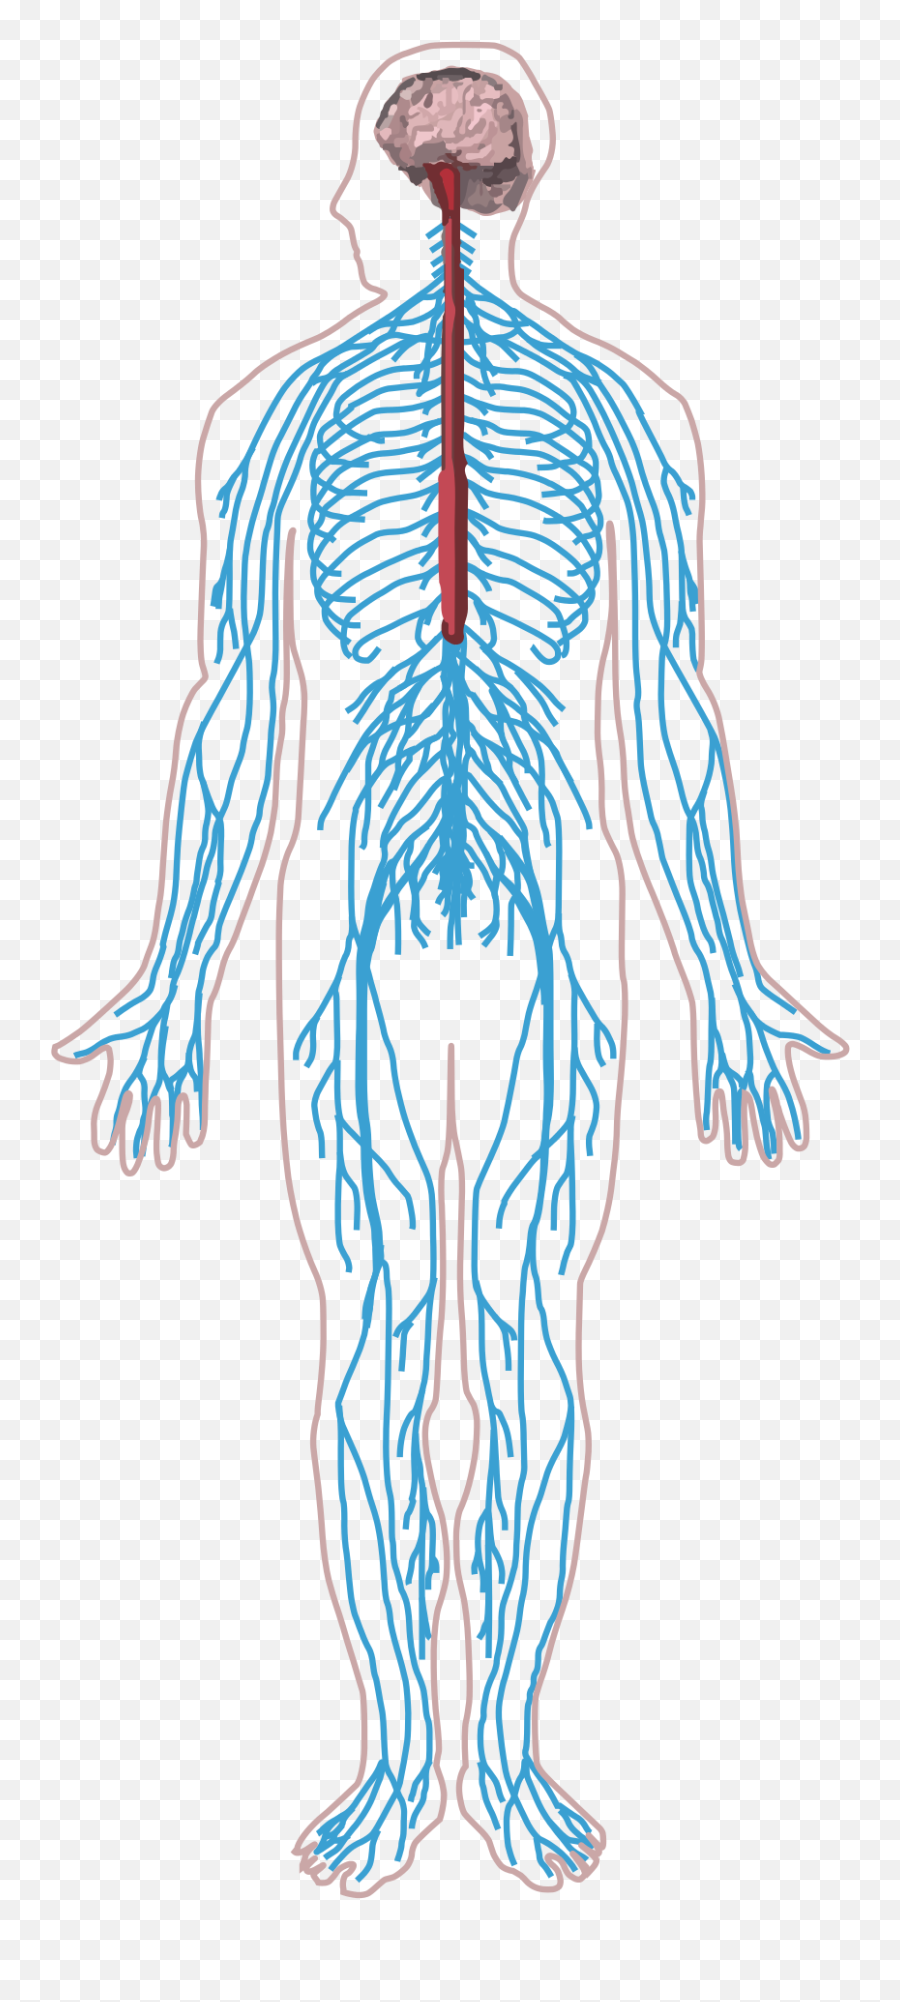 Nervous System Diagram Quizlet - Simple Unlabeled Nervous System Png,Nervous System Icon